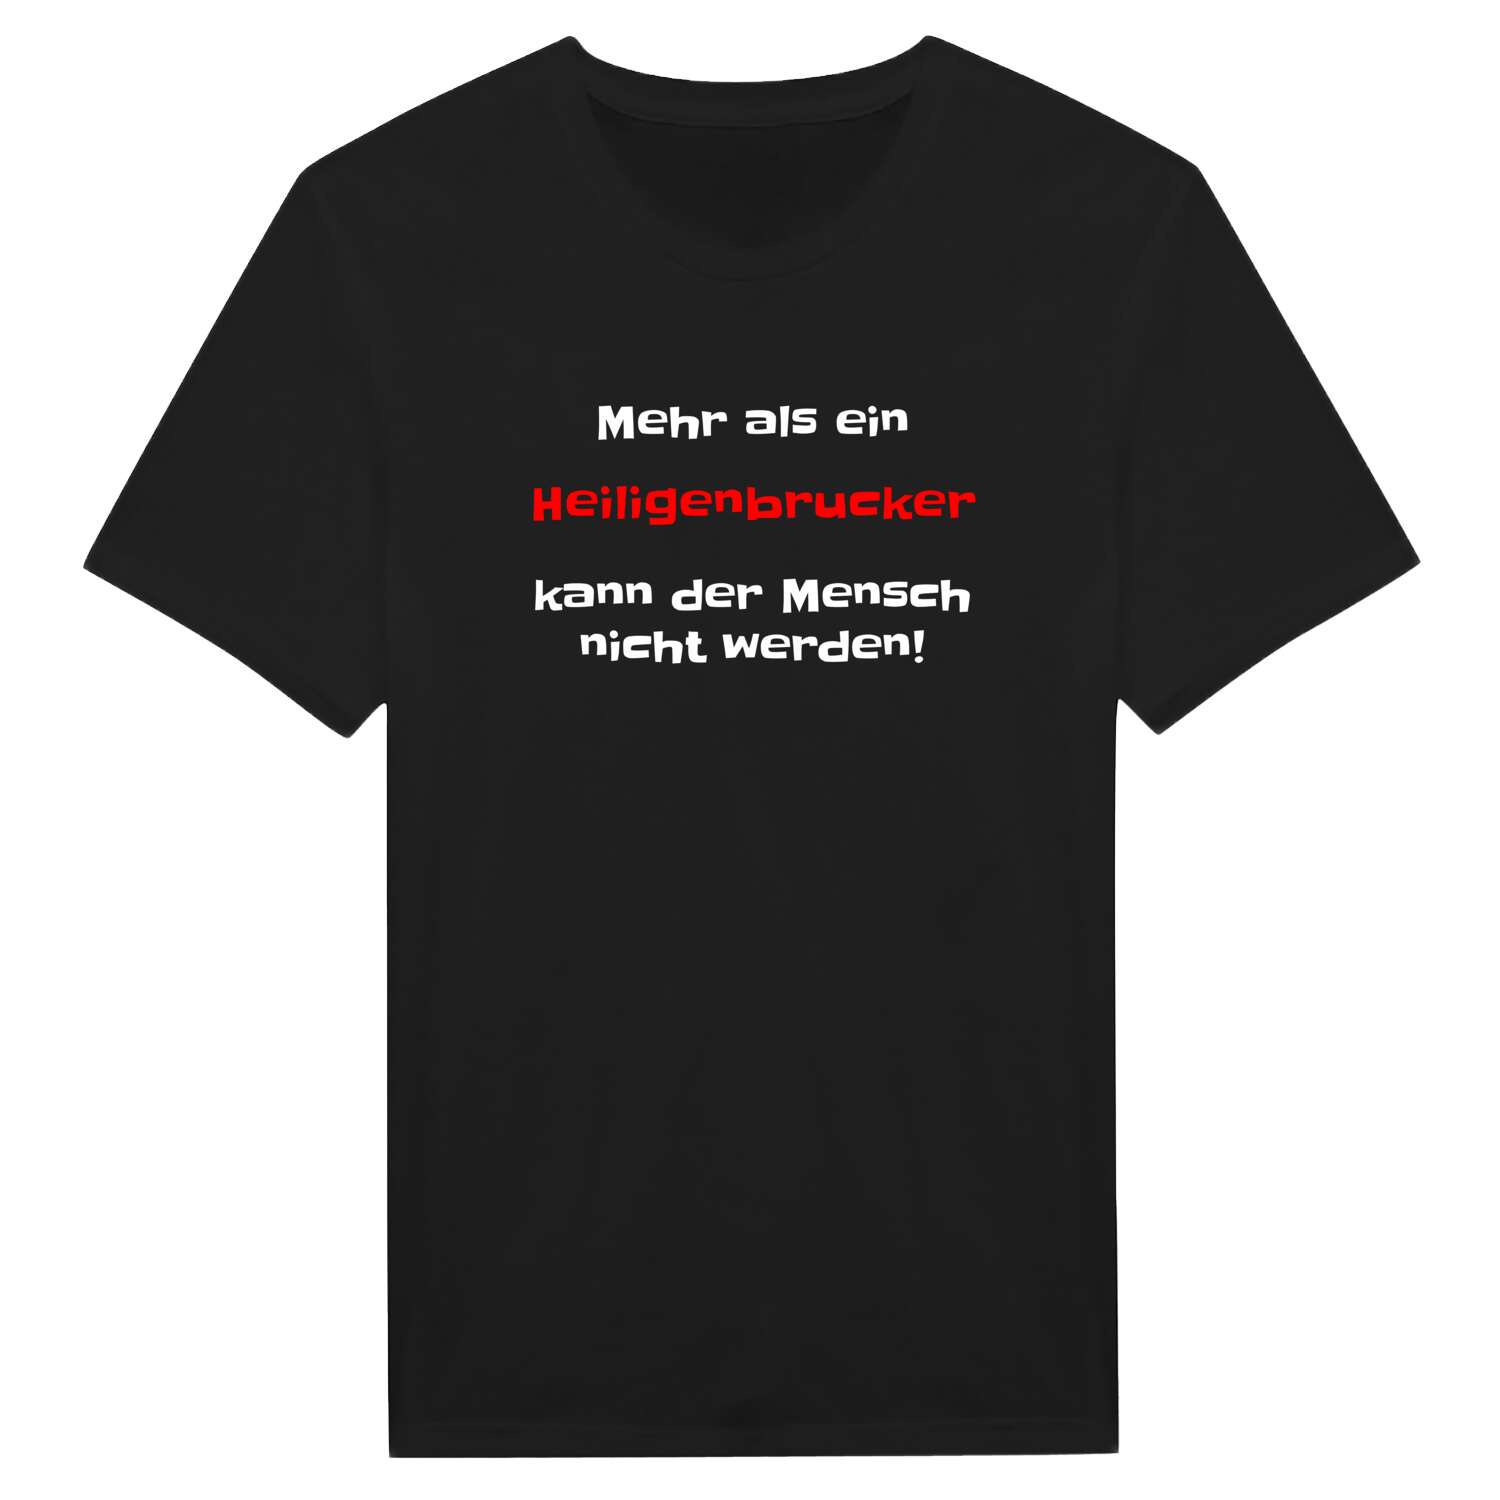 Heiligenbruck T-Shirt »Mehr als ein«